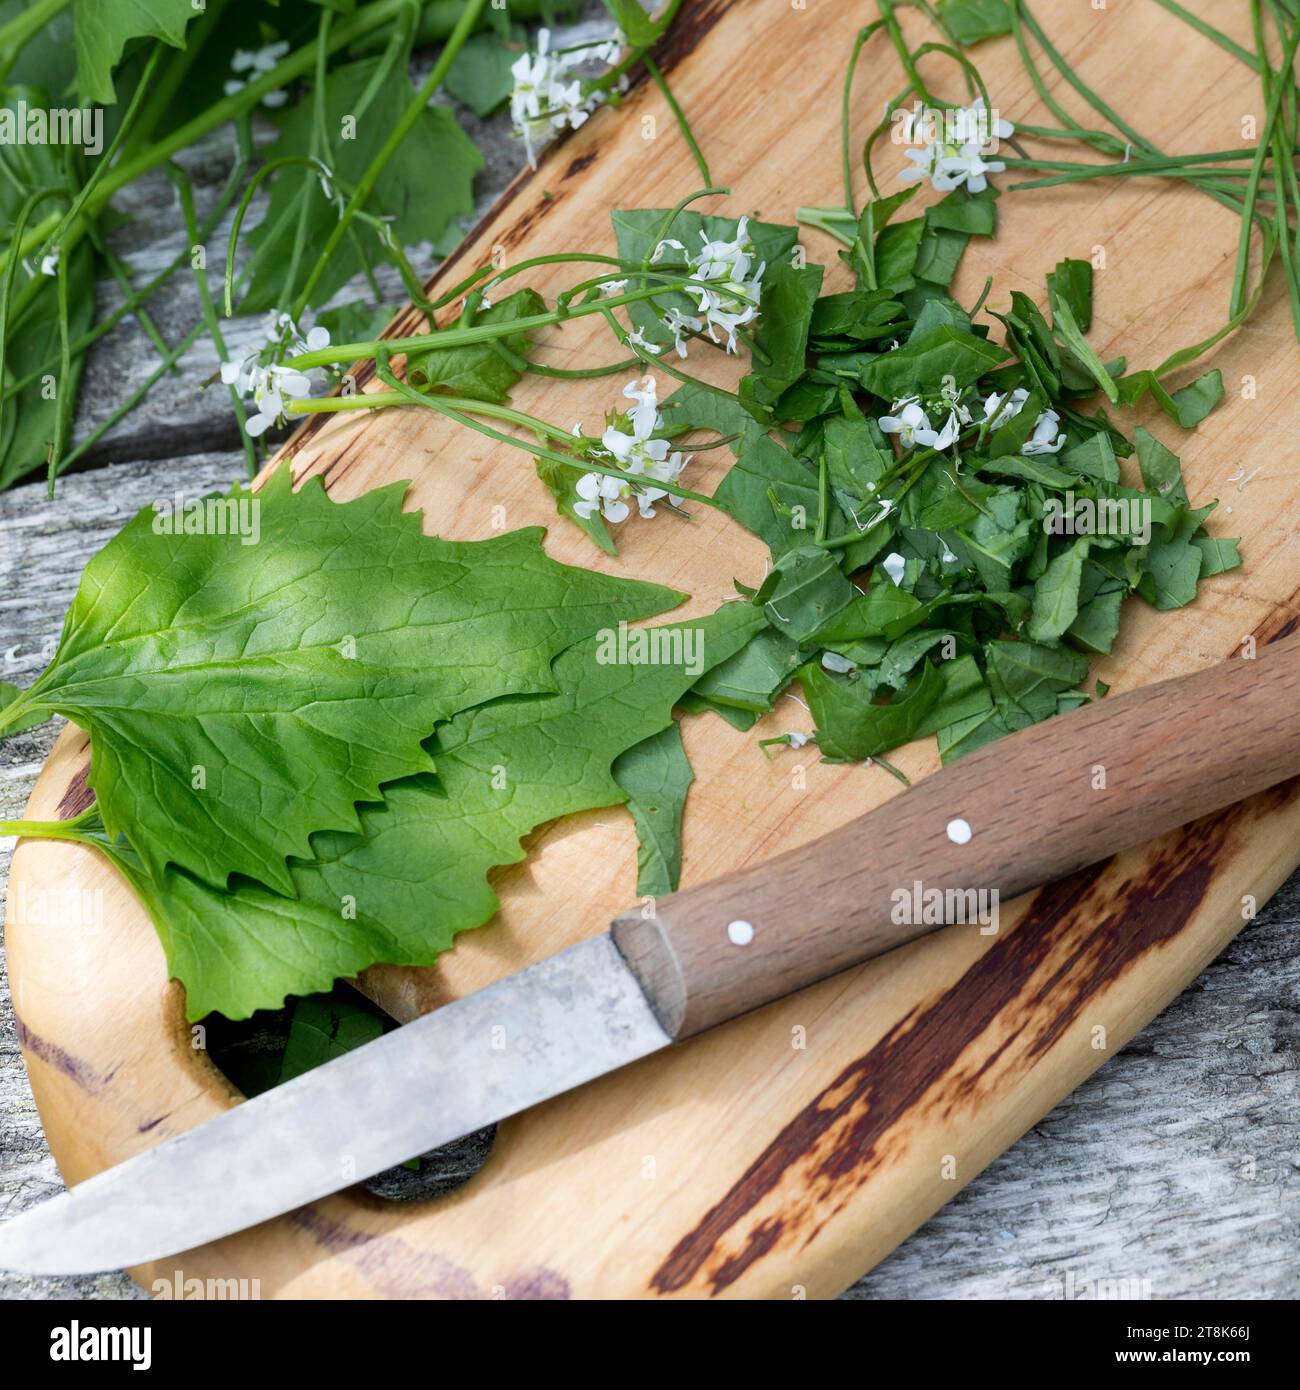 Senape all'aglio, siepi aglio, crack-by-the-hedge (Alliaria petiolata), raccolta senape all'aglio tagliata con un coltello Foto Stock